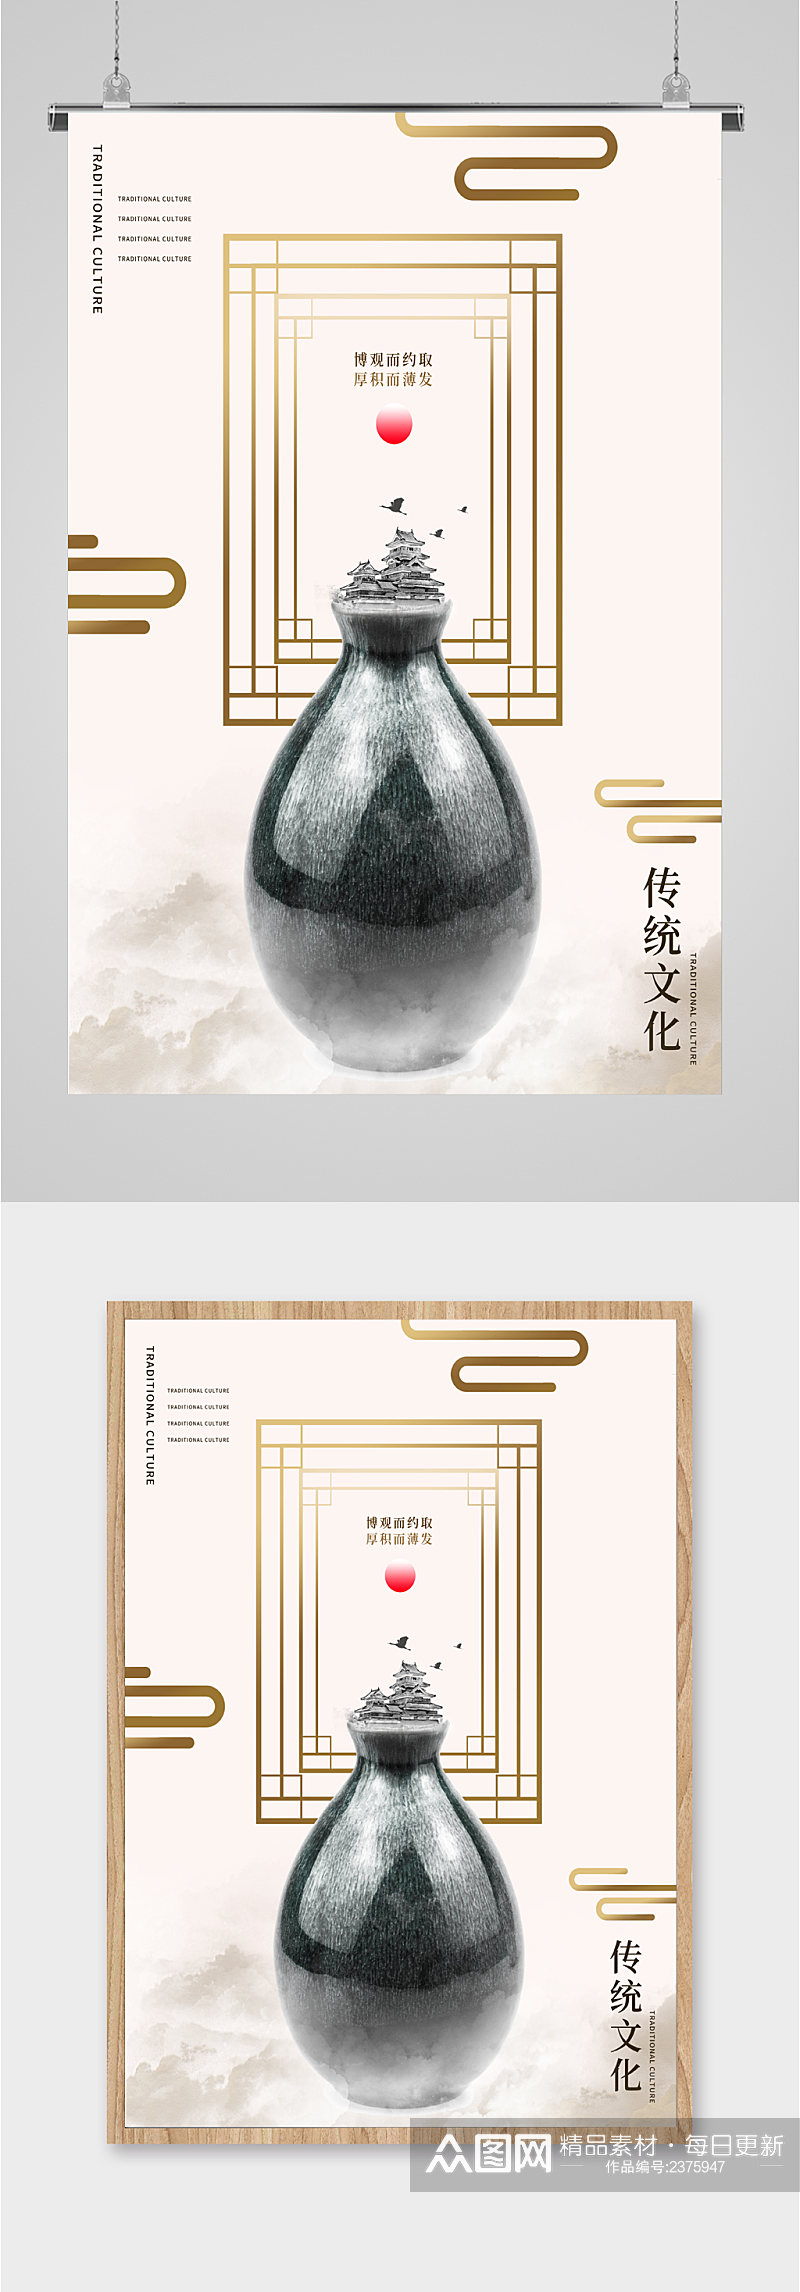 中国传统文化海报素材